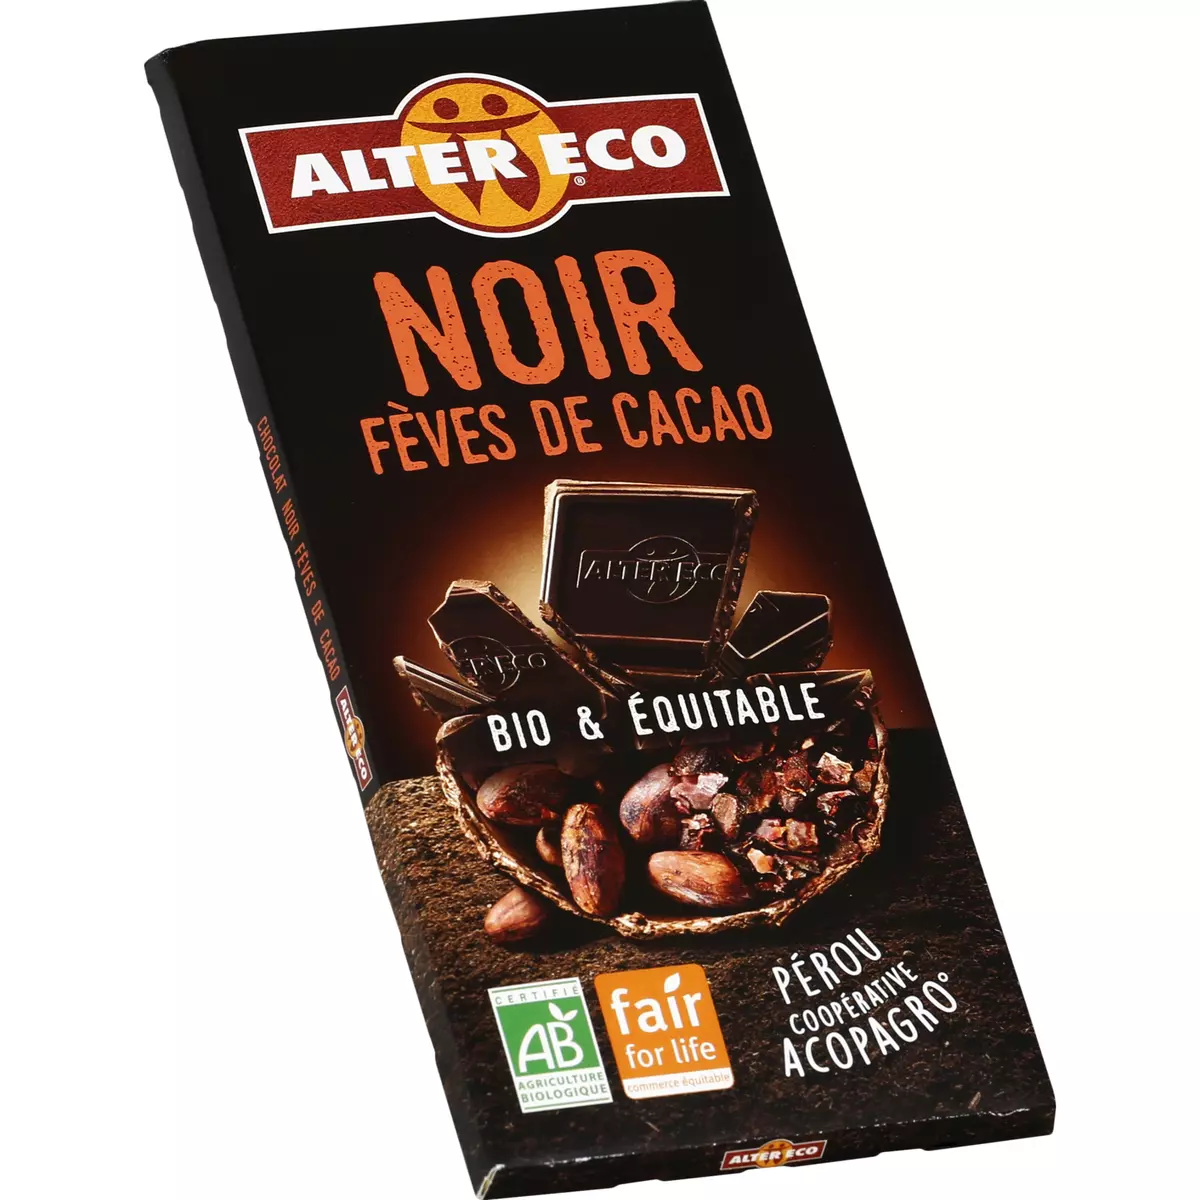 ALTER ECO Chocolat noir fèves de cacao bio et équitable tablette 100g 